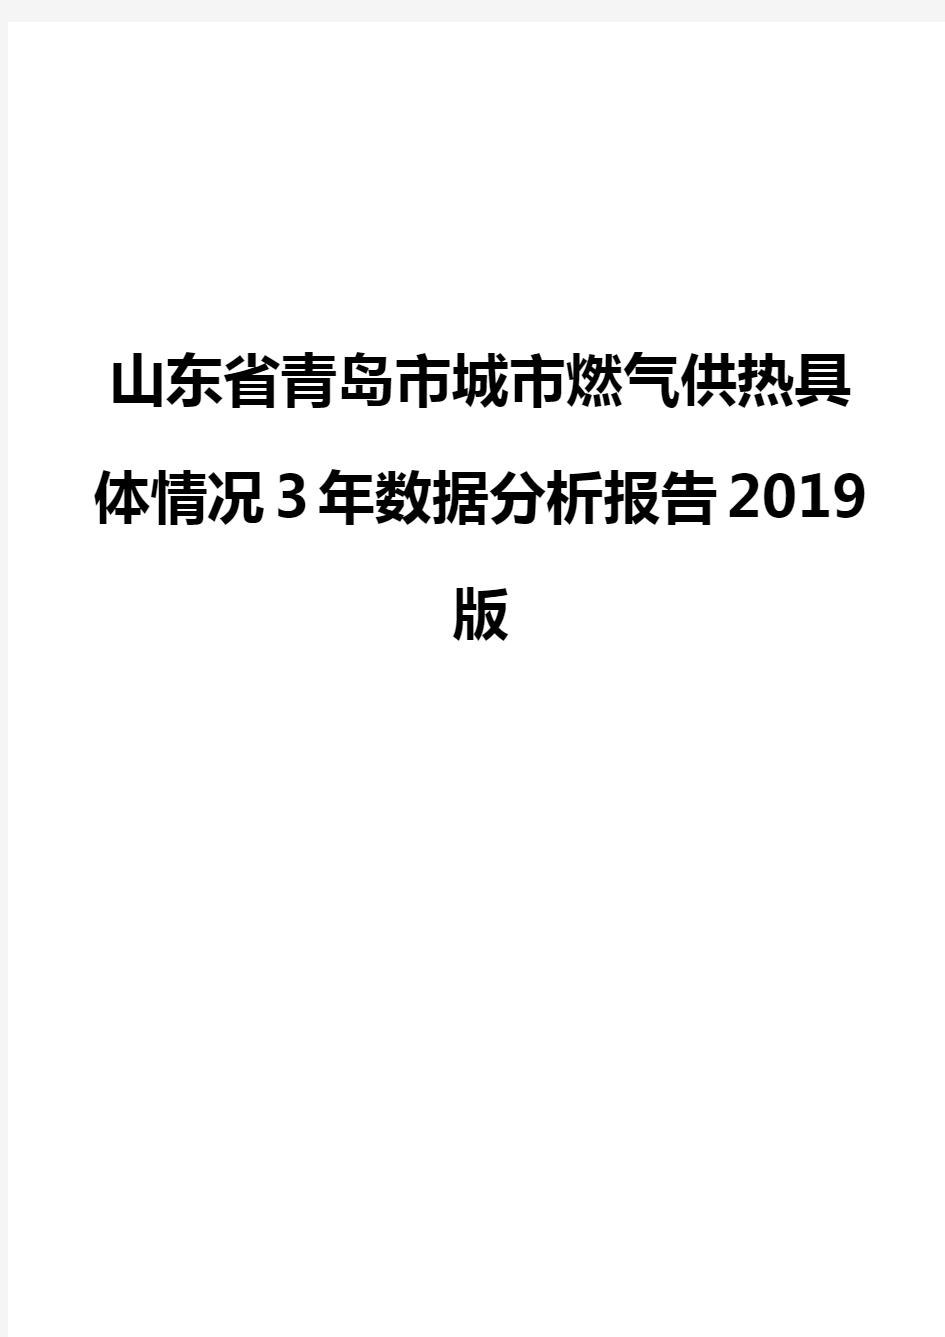 山东省青岛市城市燃气供热具体情况3年数据分析报告2019版